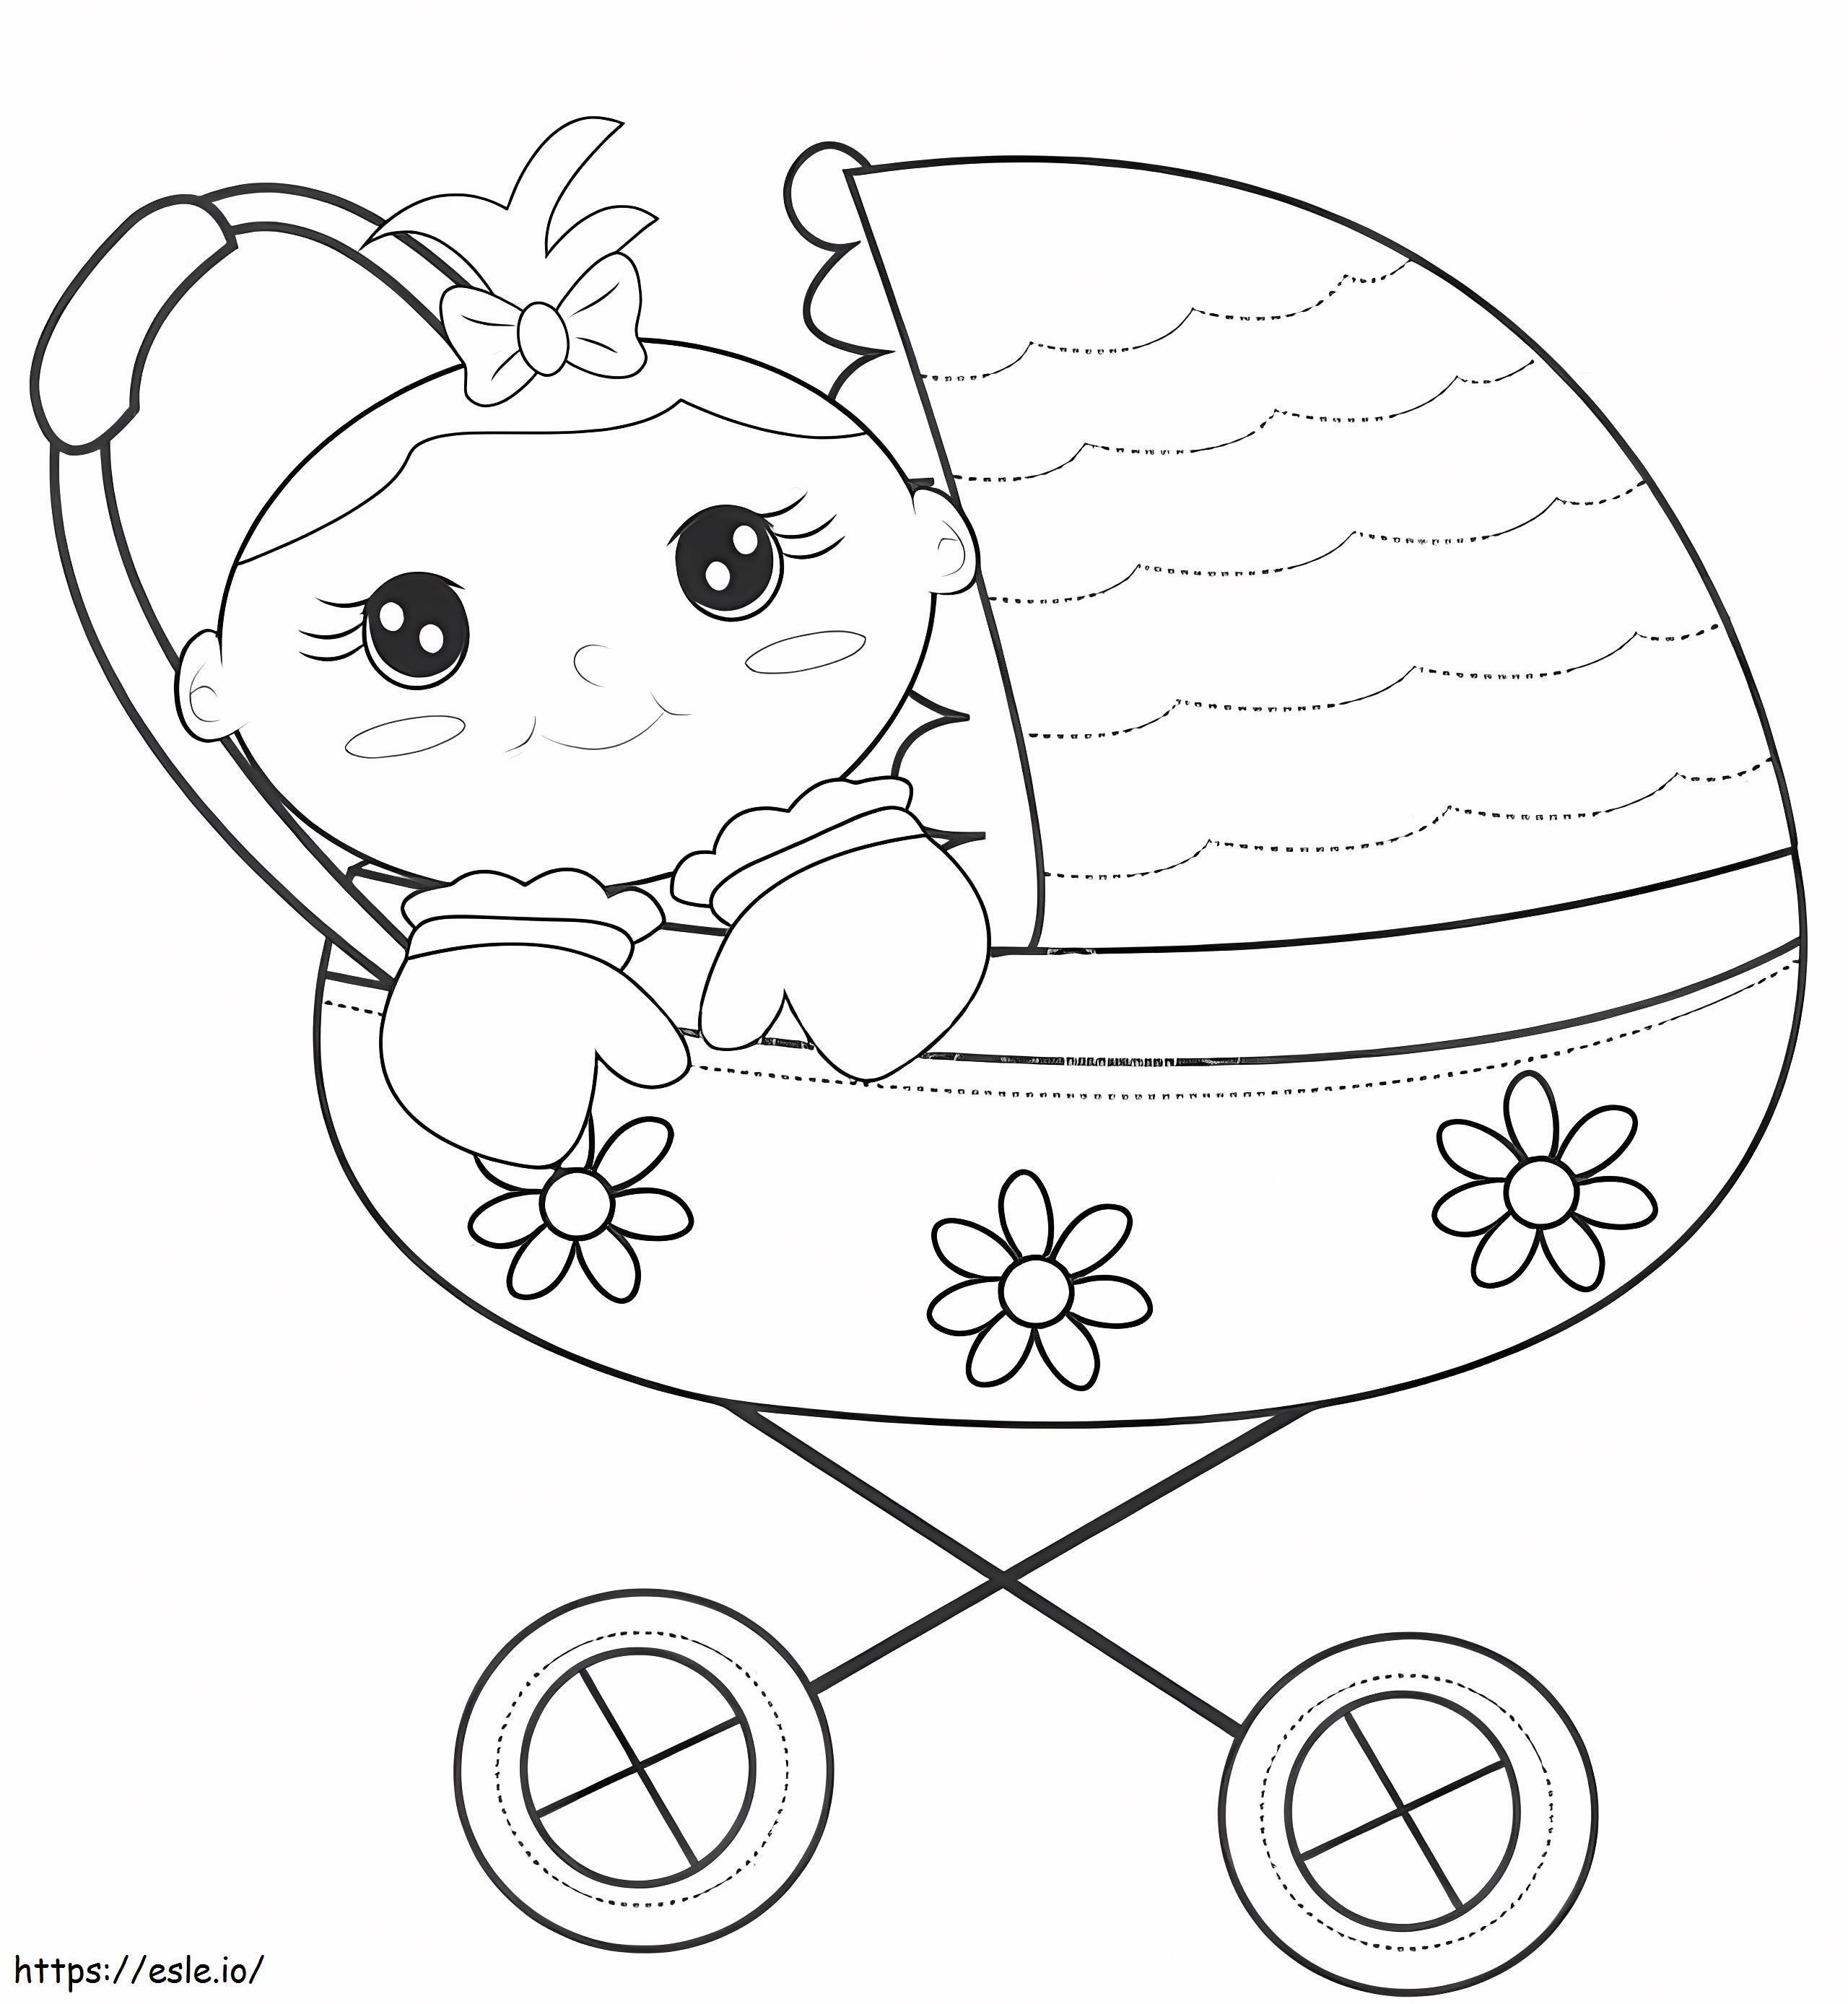 Malvorlagen für süße Babys im Kinderwagen M9Oa2Hgs ausmalbilder